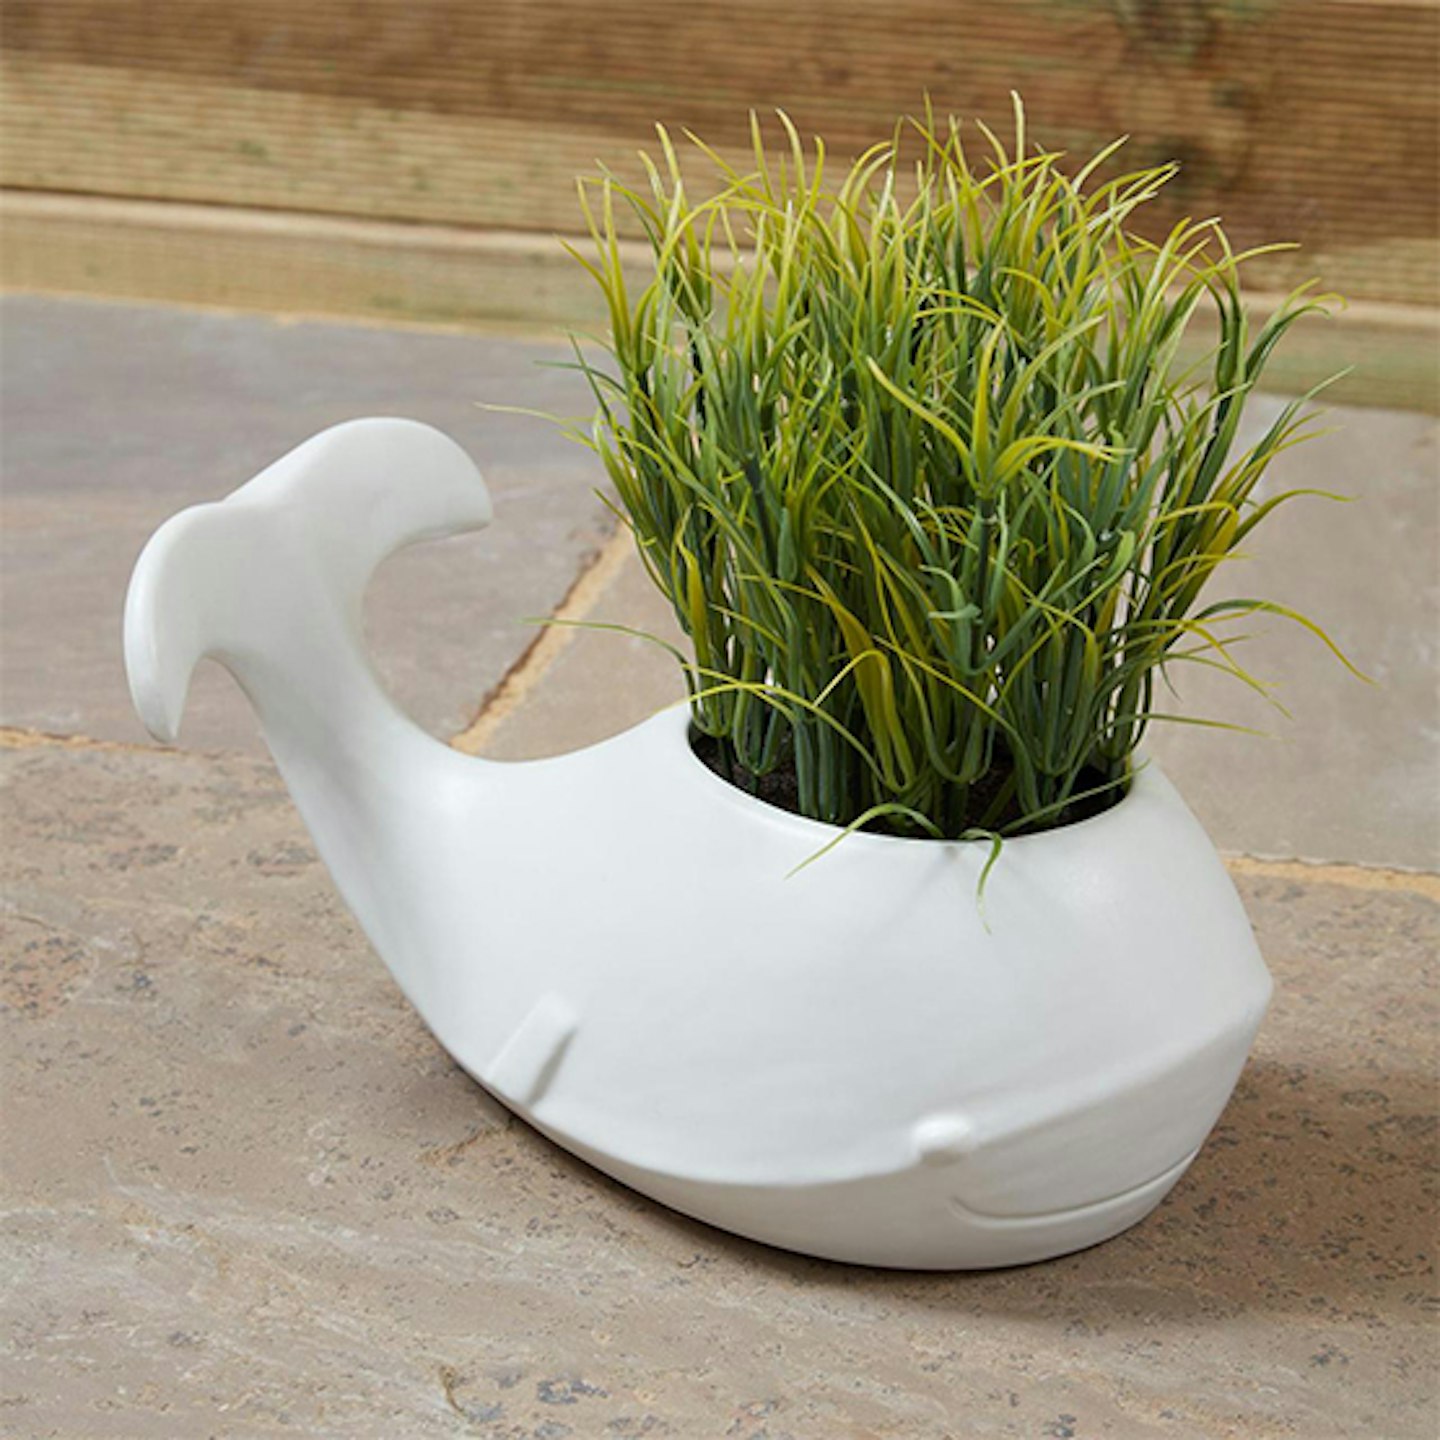 Grass in white ceramic whale